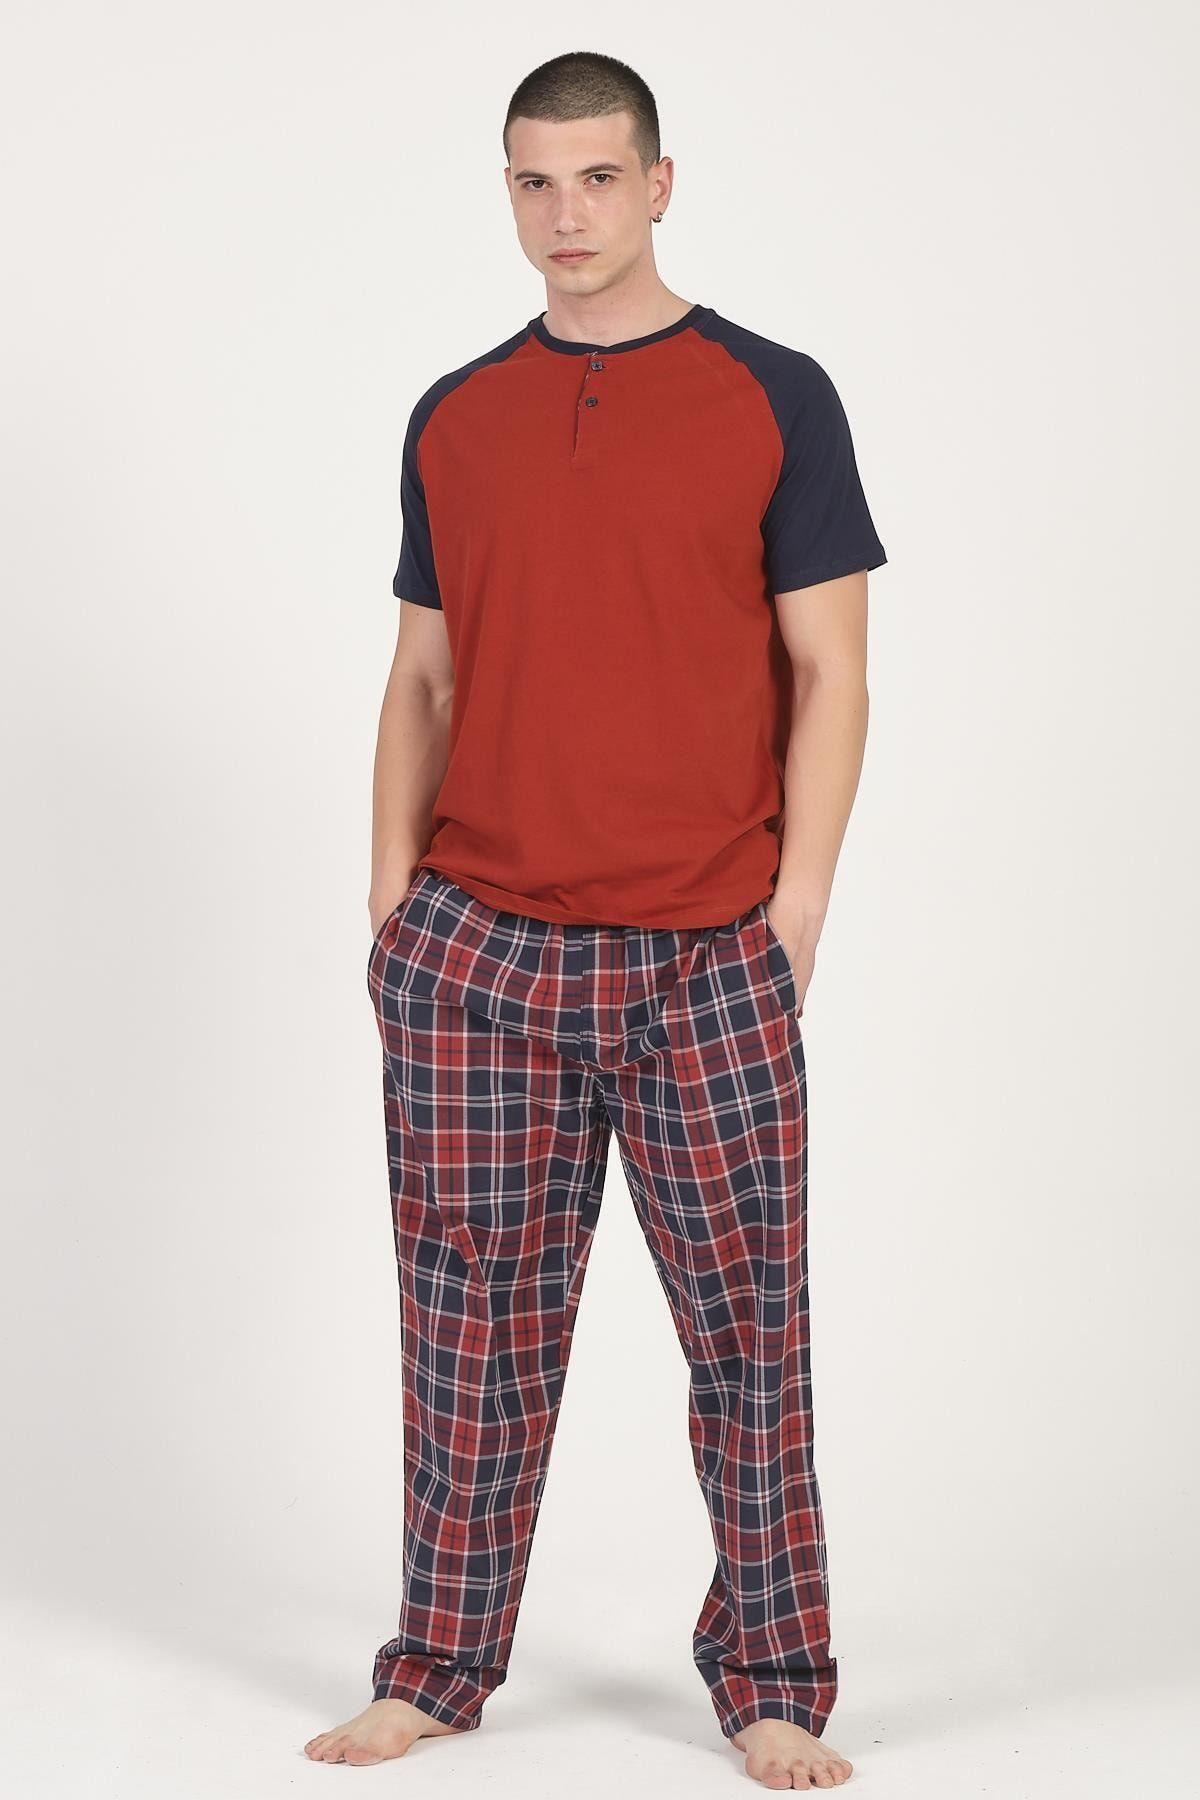 DOFİ Erkek Kırmızı Lacivert Büyük Beden Yazlık Pijama Takımı Ekose Desenli Cepli